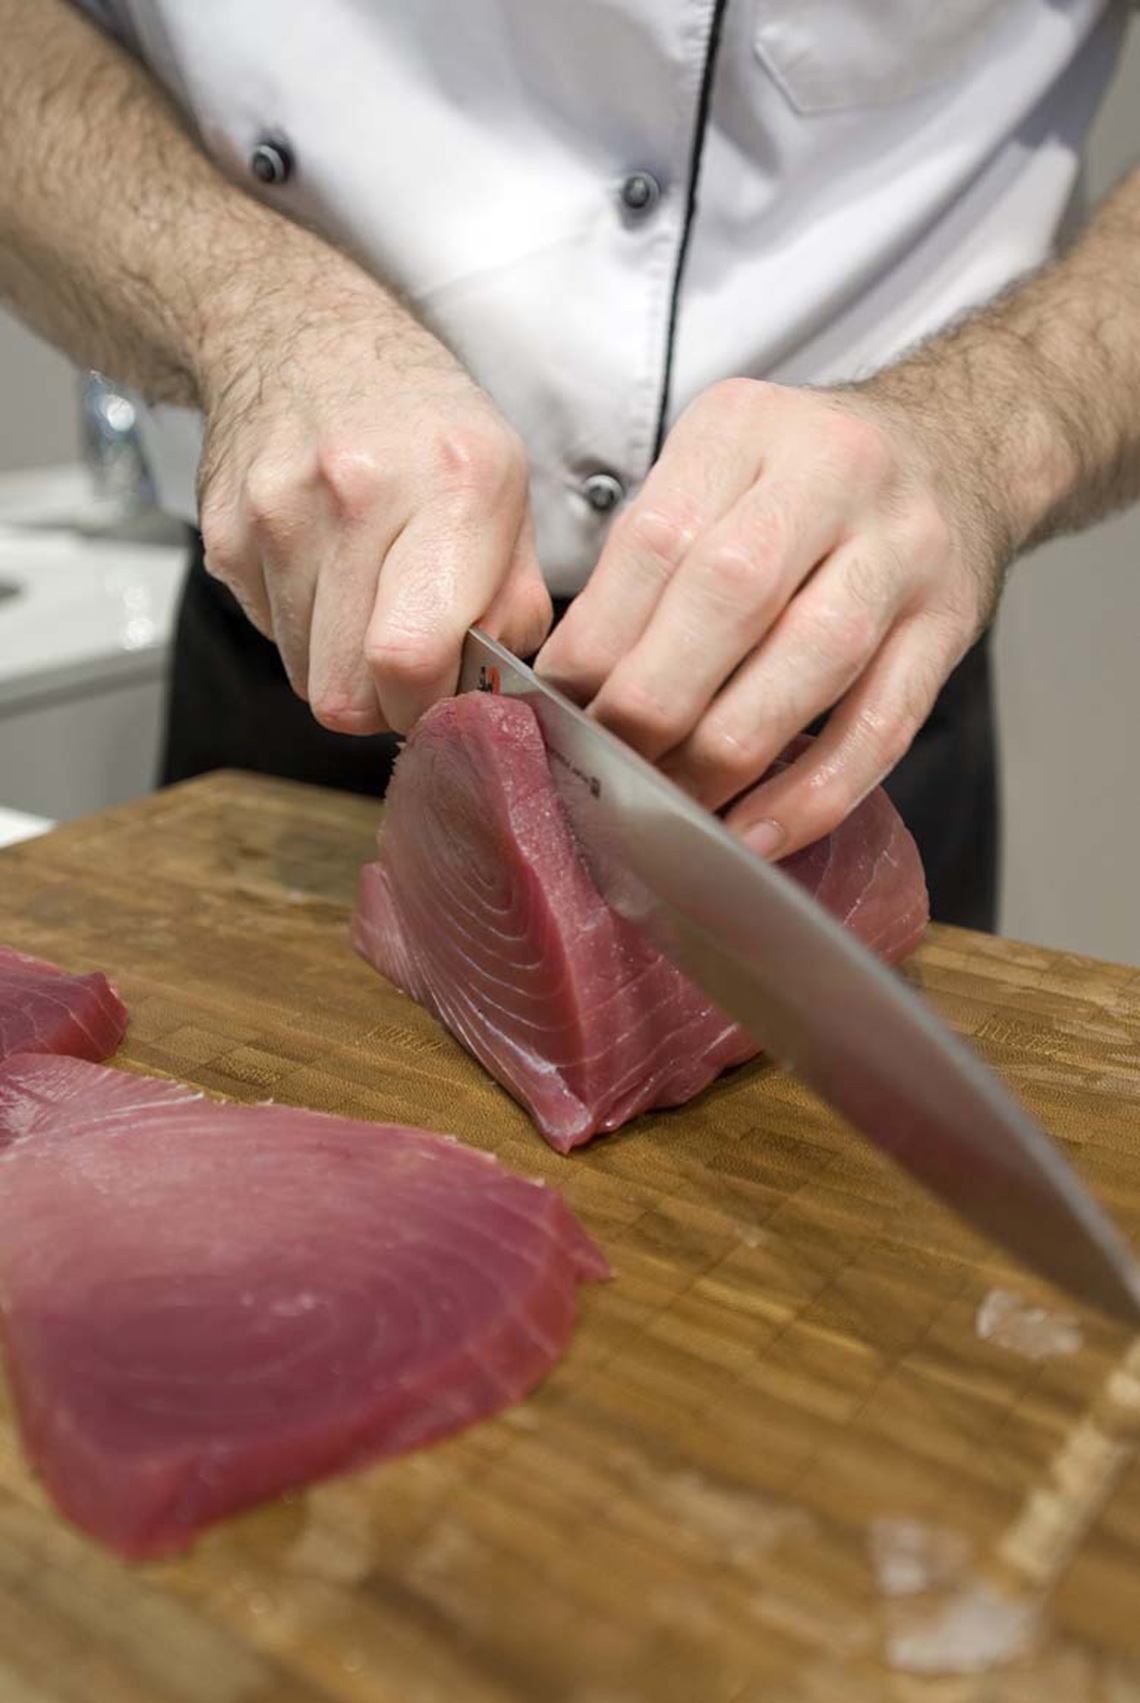 Jedynie kute przez mistrzów rzemiosła noże zadowolą ambitnych kucharzy